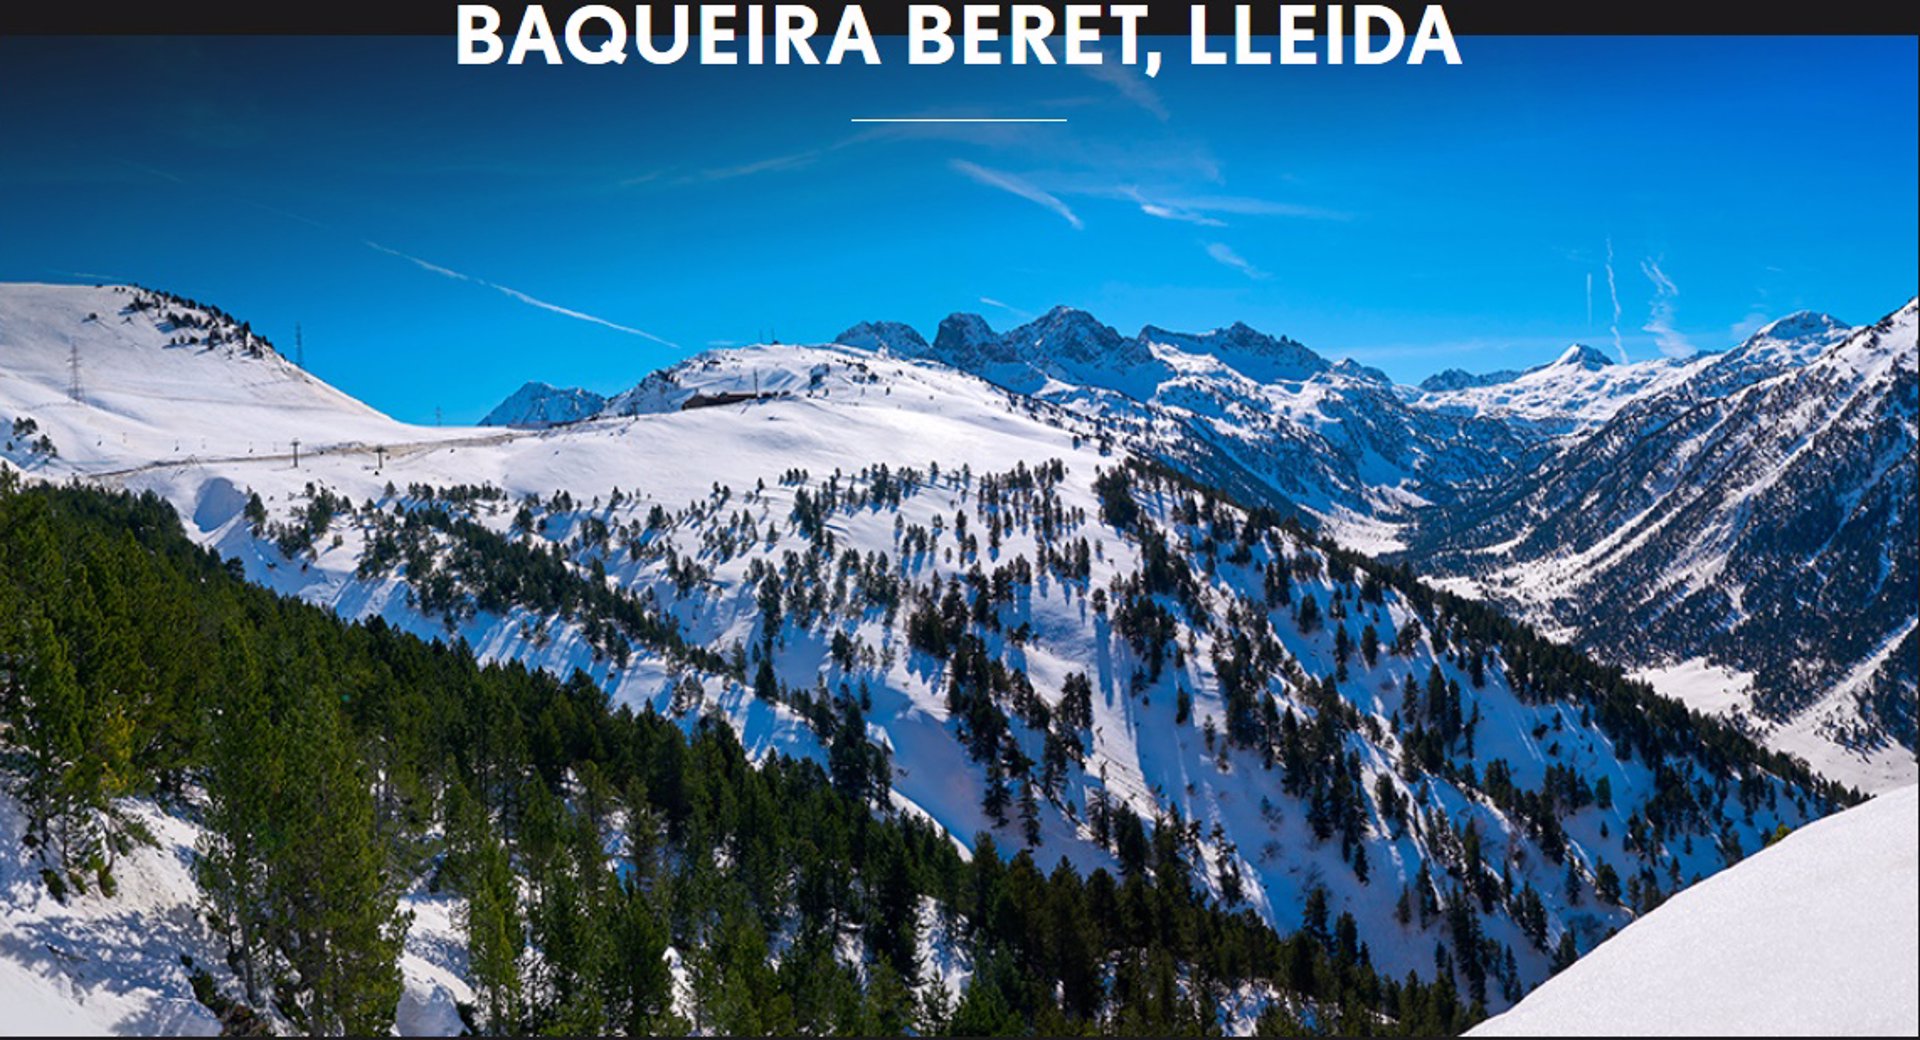 Baqueira Beret, en Lleida